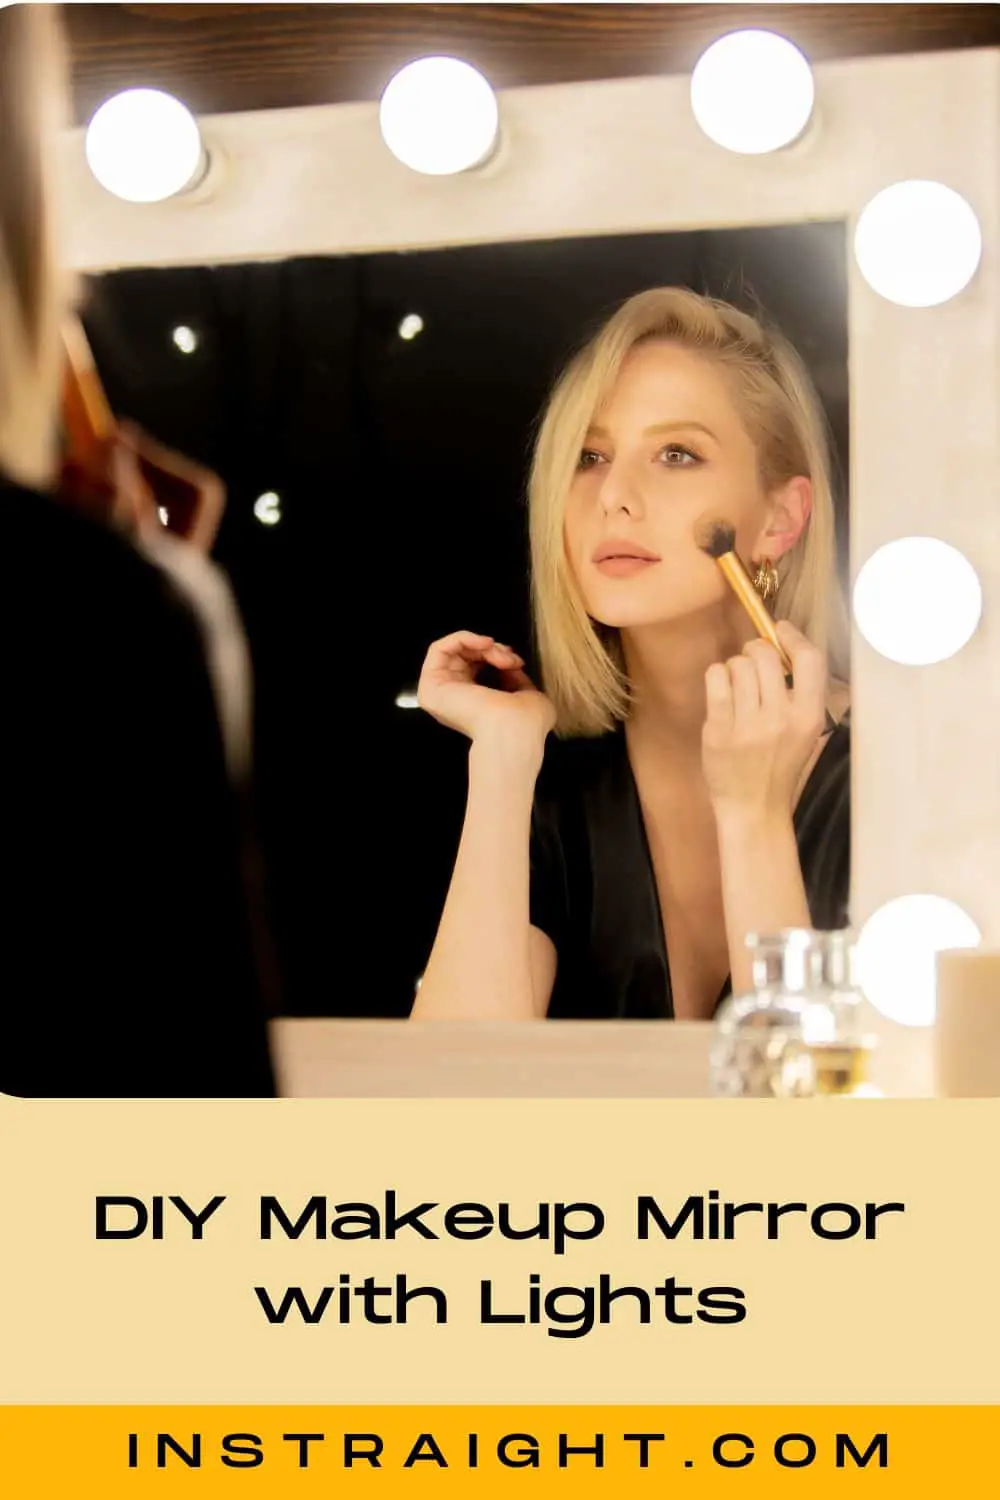 DIY Makeup Mirror with Lights